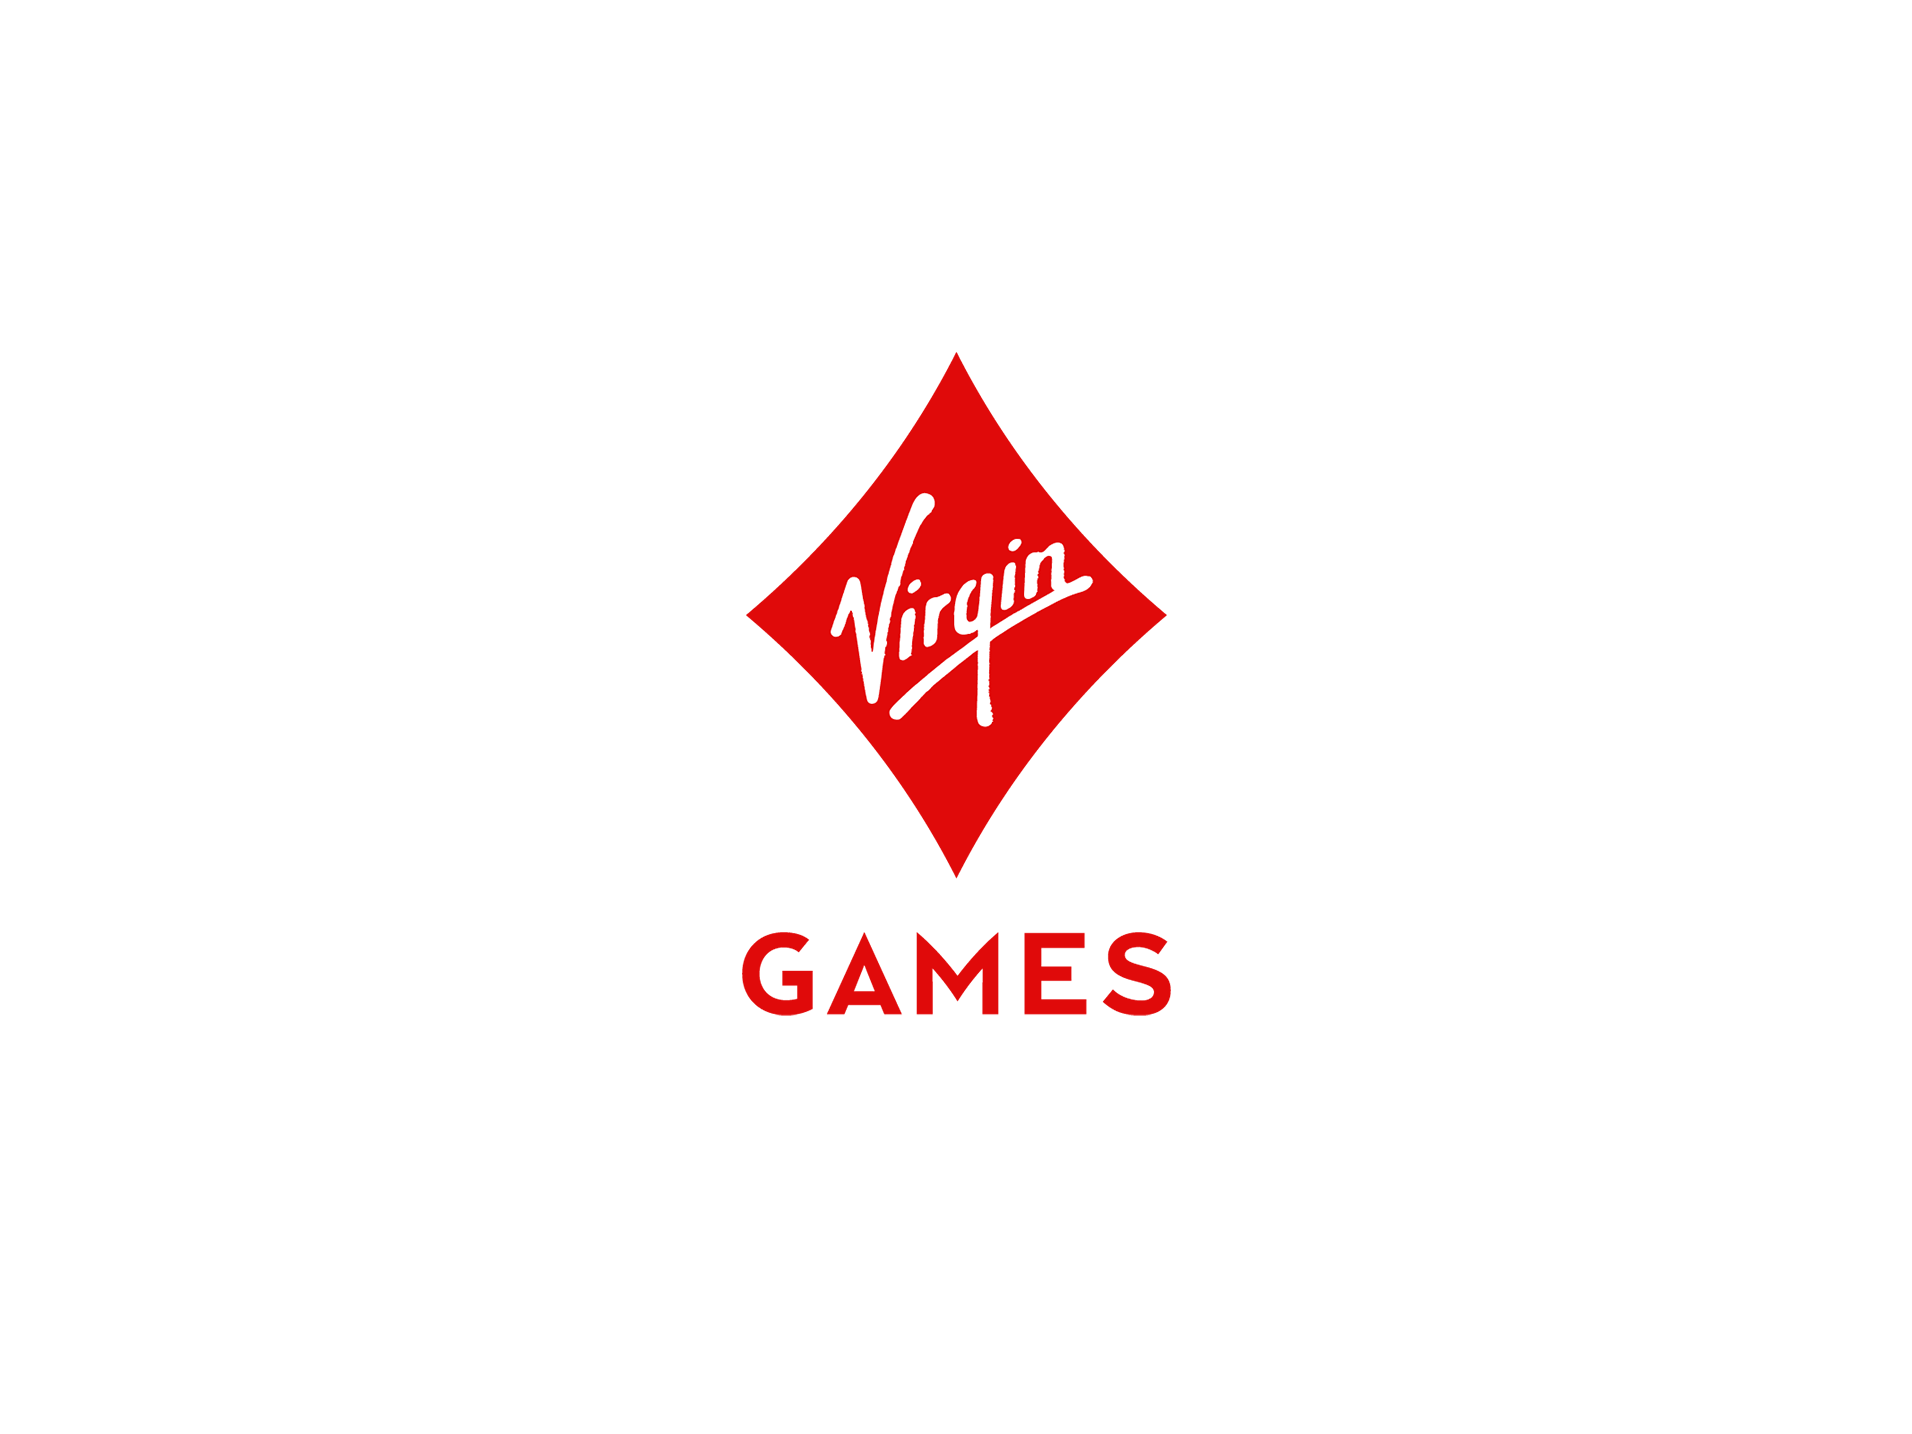 Virgin Games logo